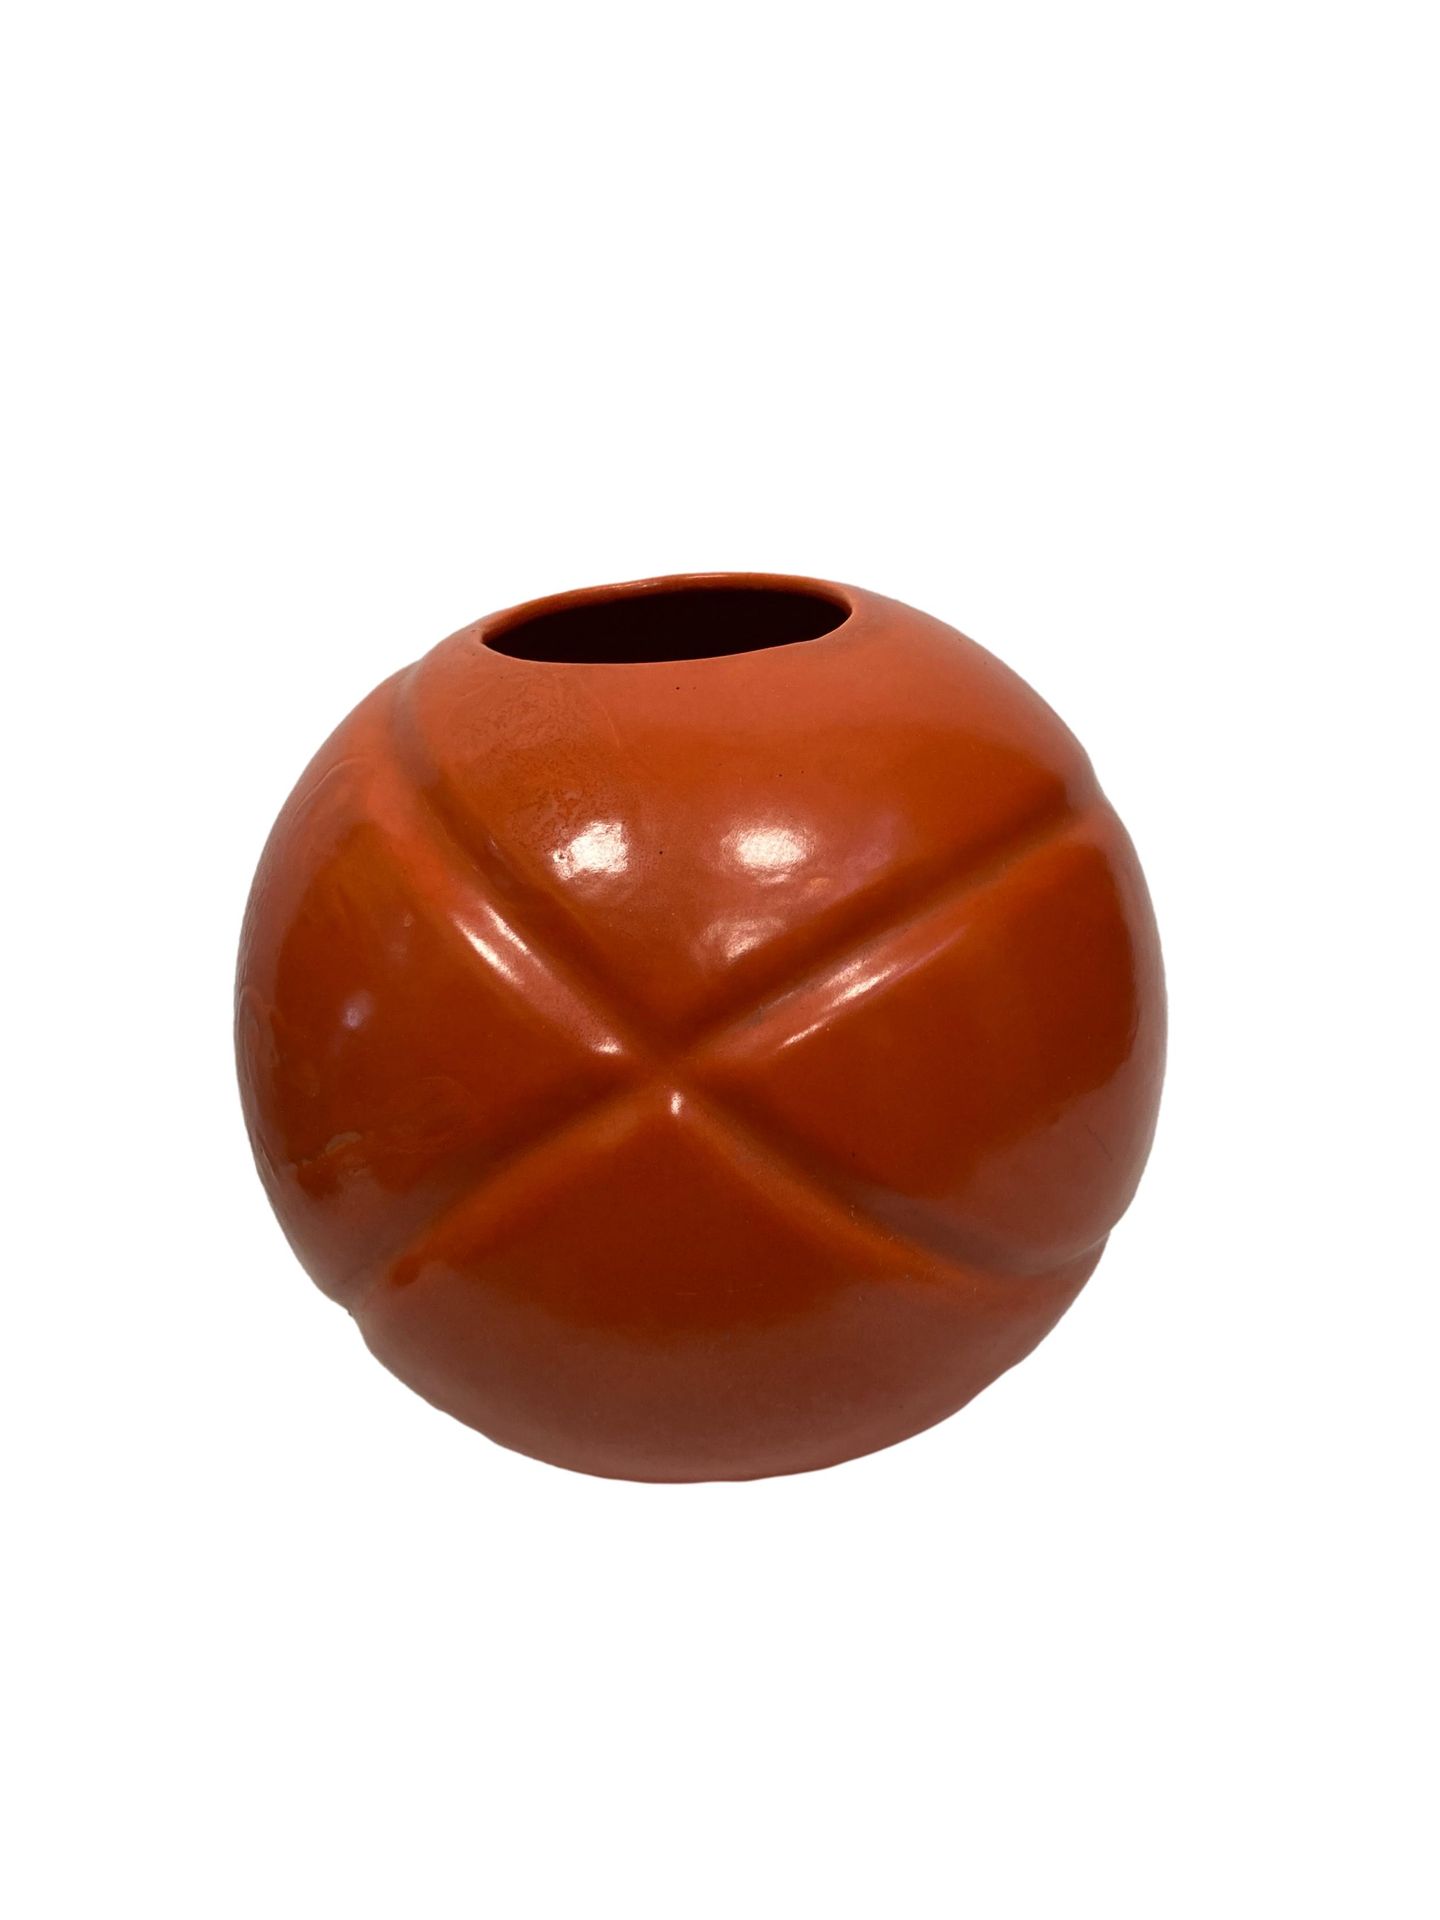 Null STANLEY

Vase boule en céramique émaillée polychrome corail

H. 23 cm